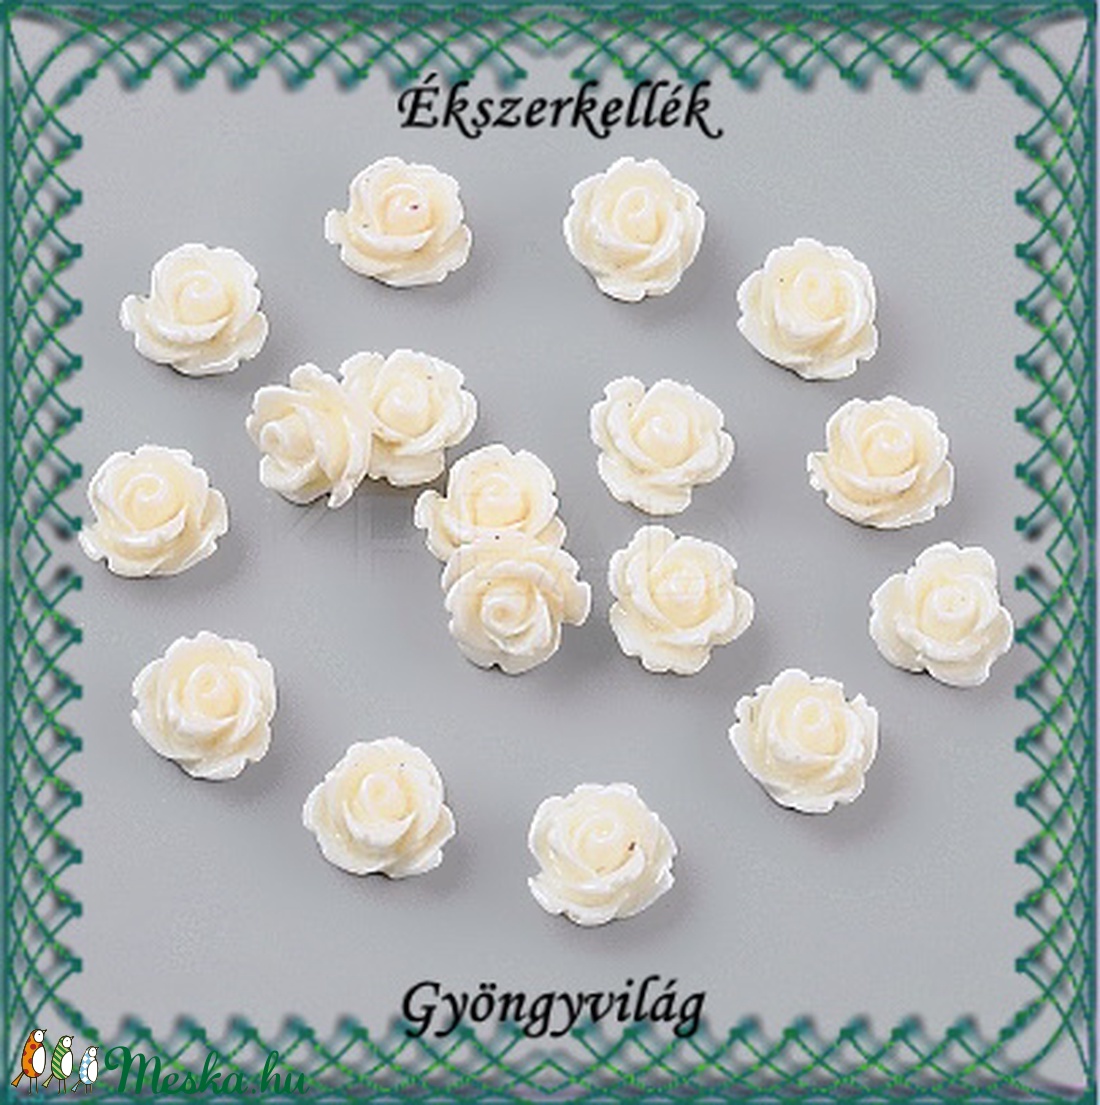 Ékszerkellék: gyanta virág BGYV 03 20db - gyöngy, ékszerkellék - üveggyöngy - Meska.hu